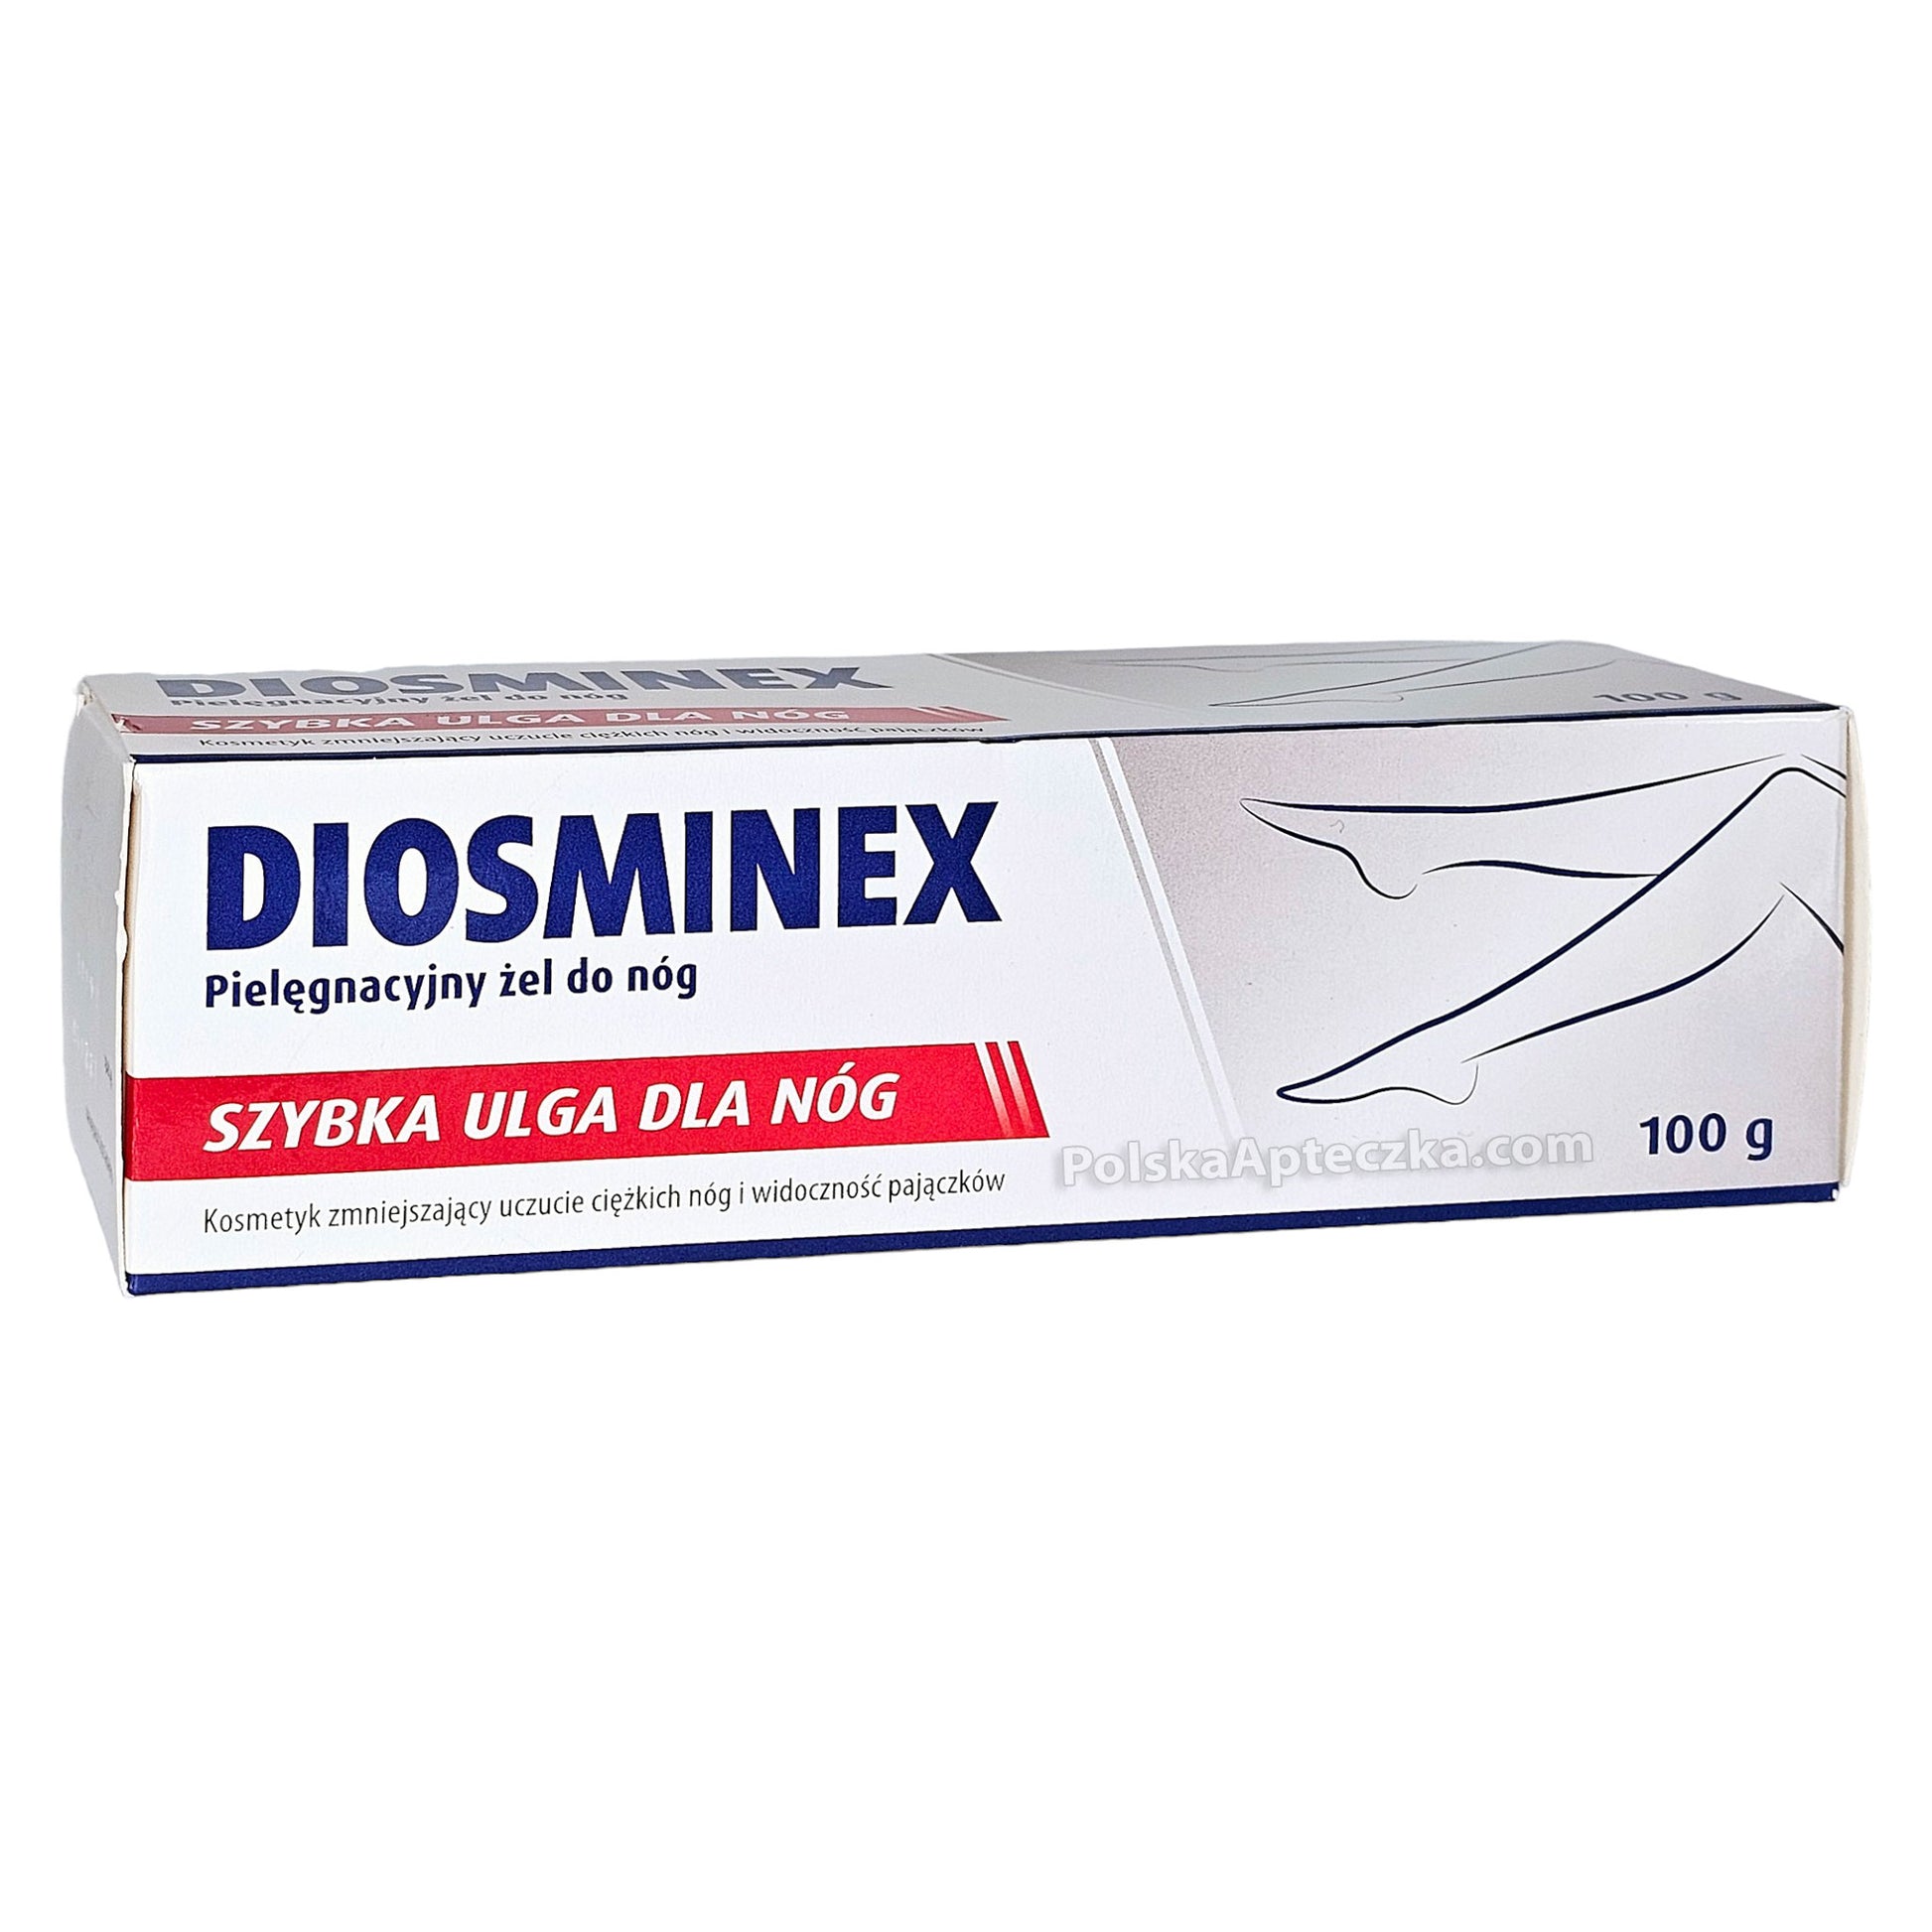 diosminex zel